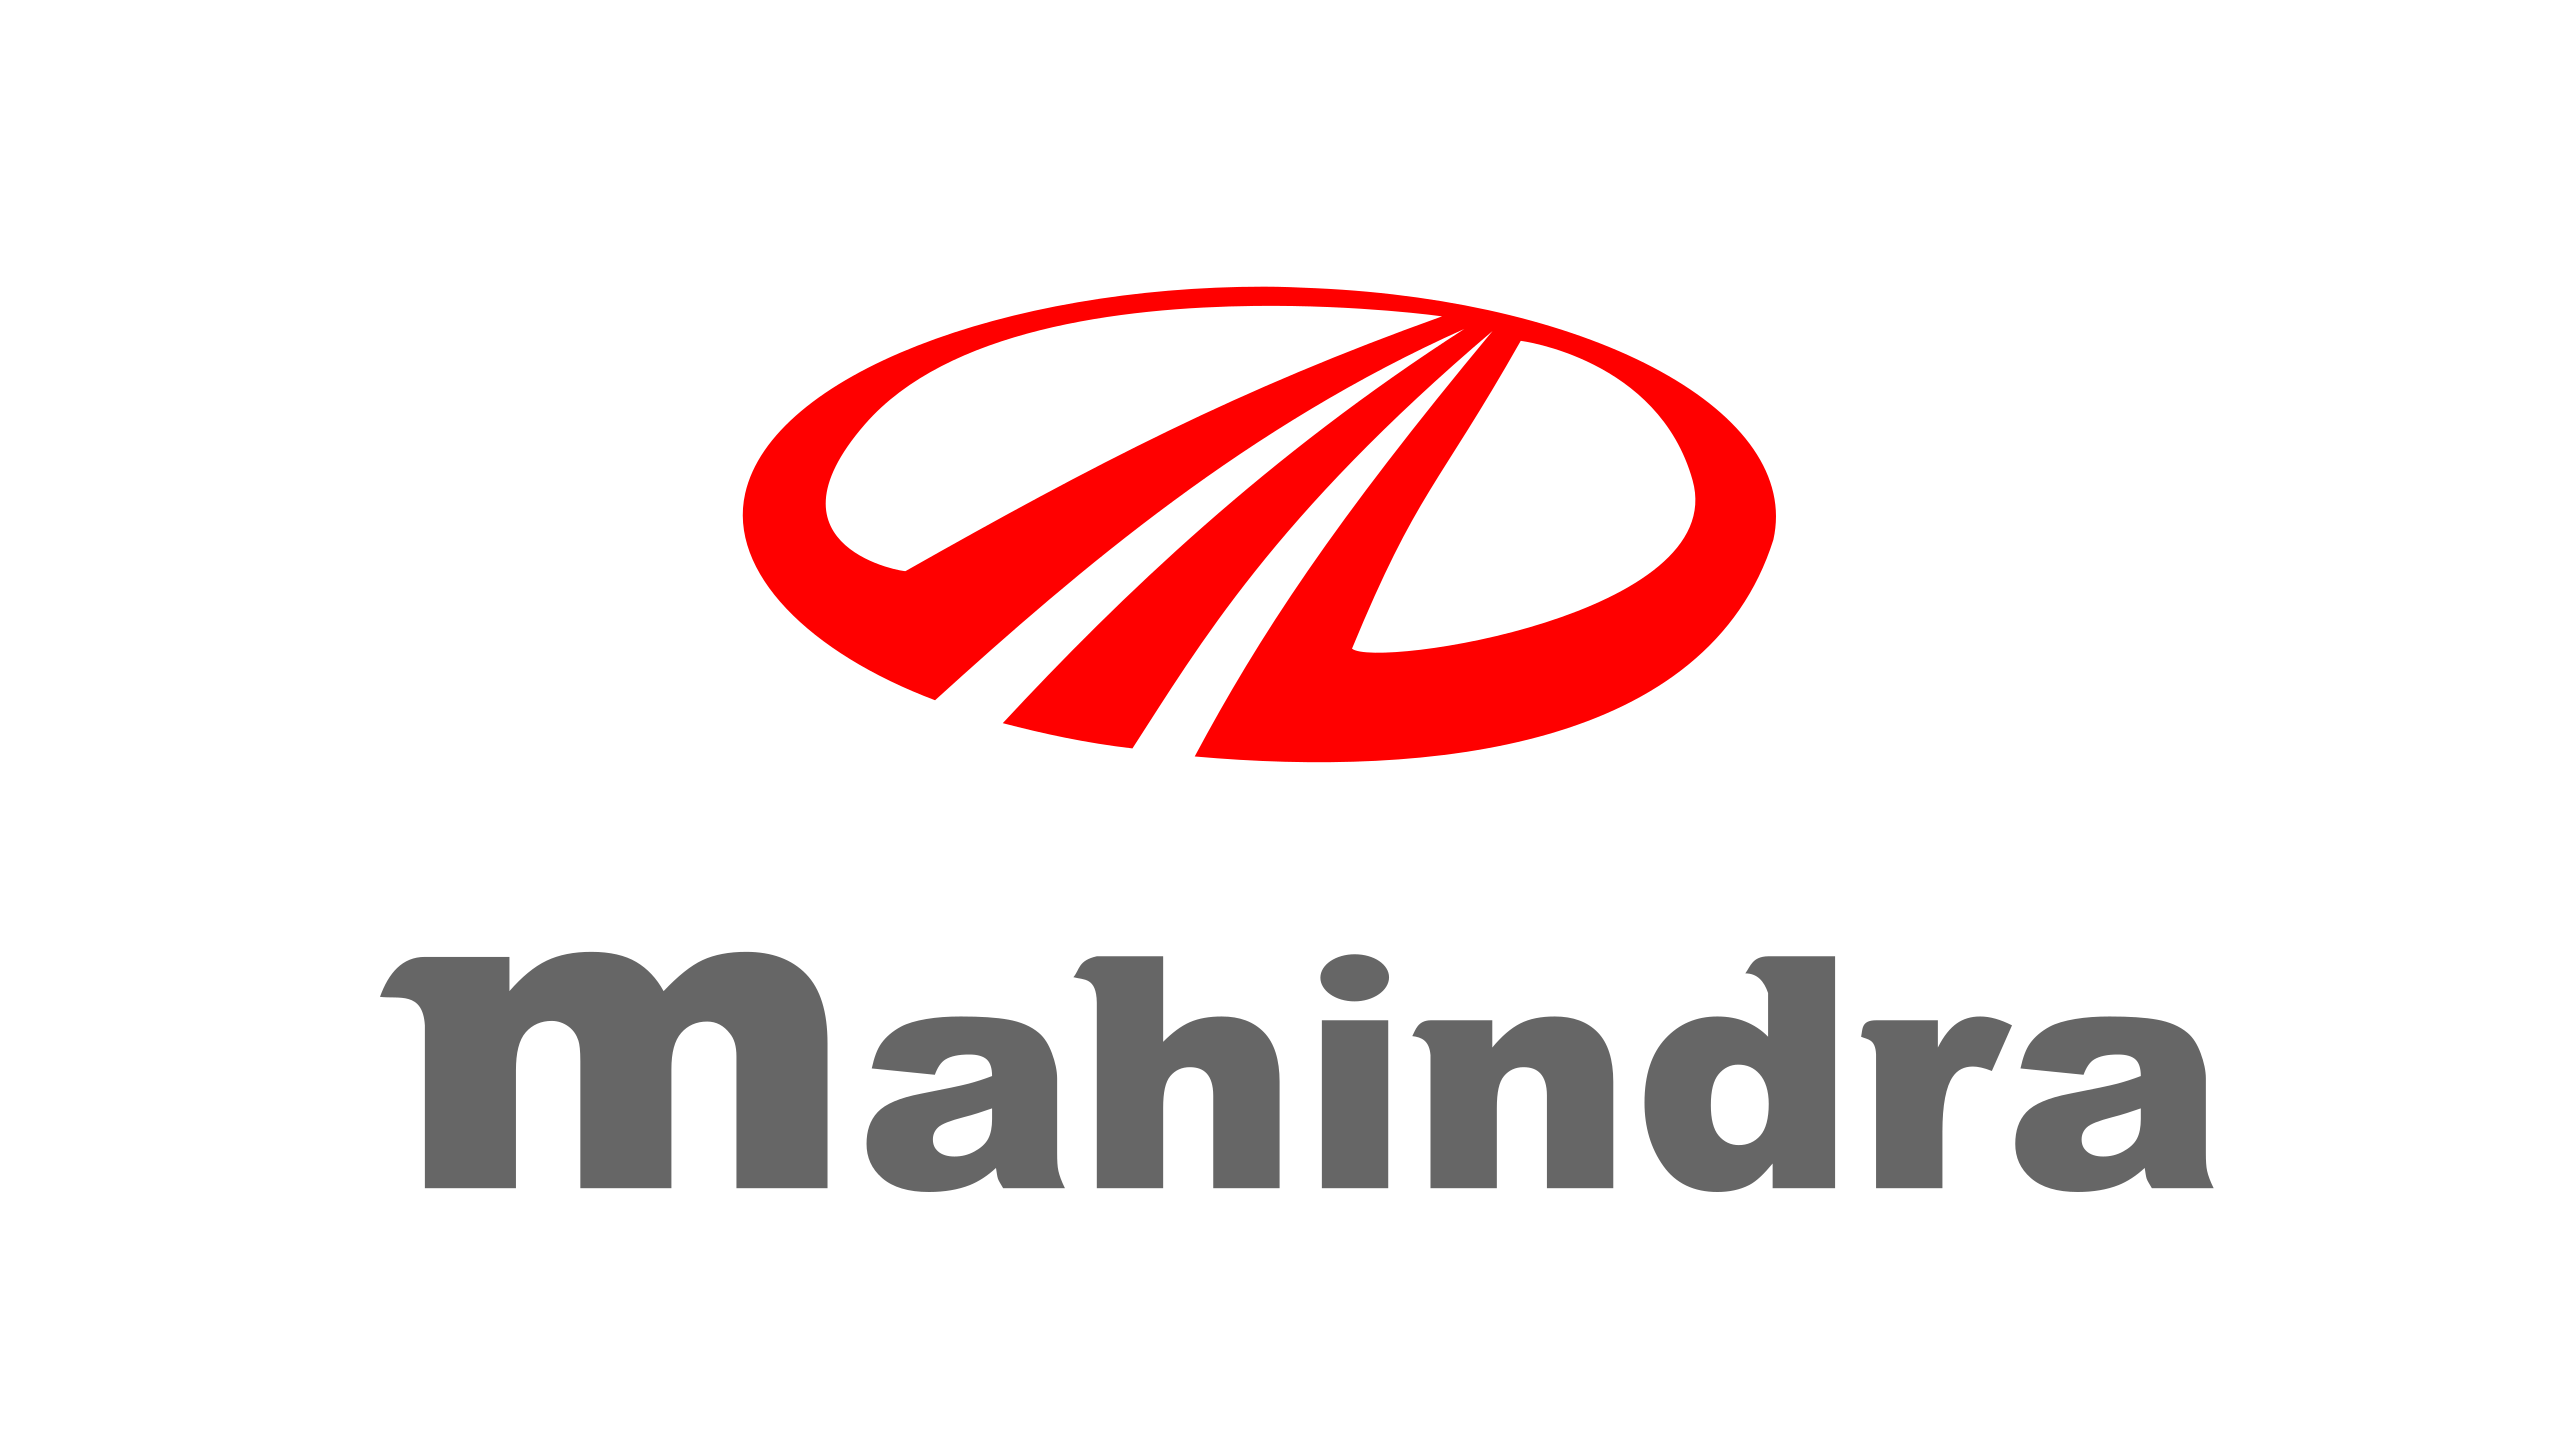 Mahindra-logo-2560x1440